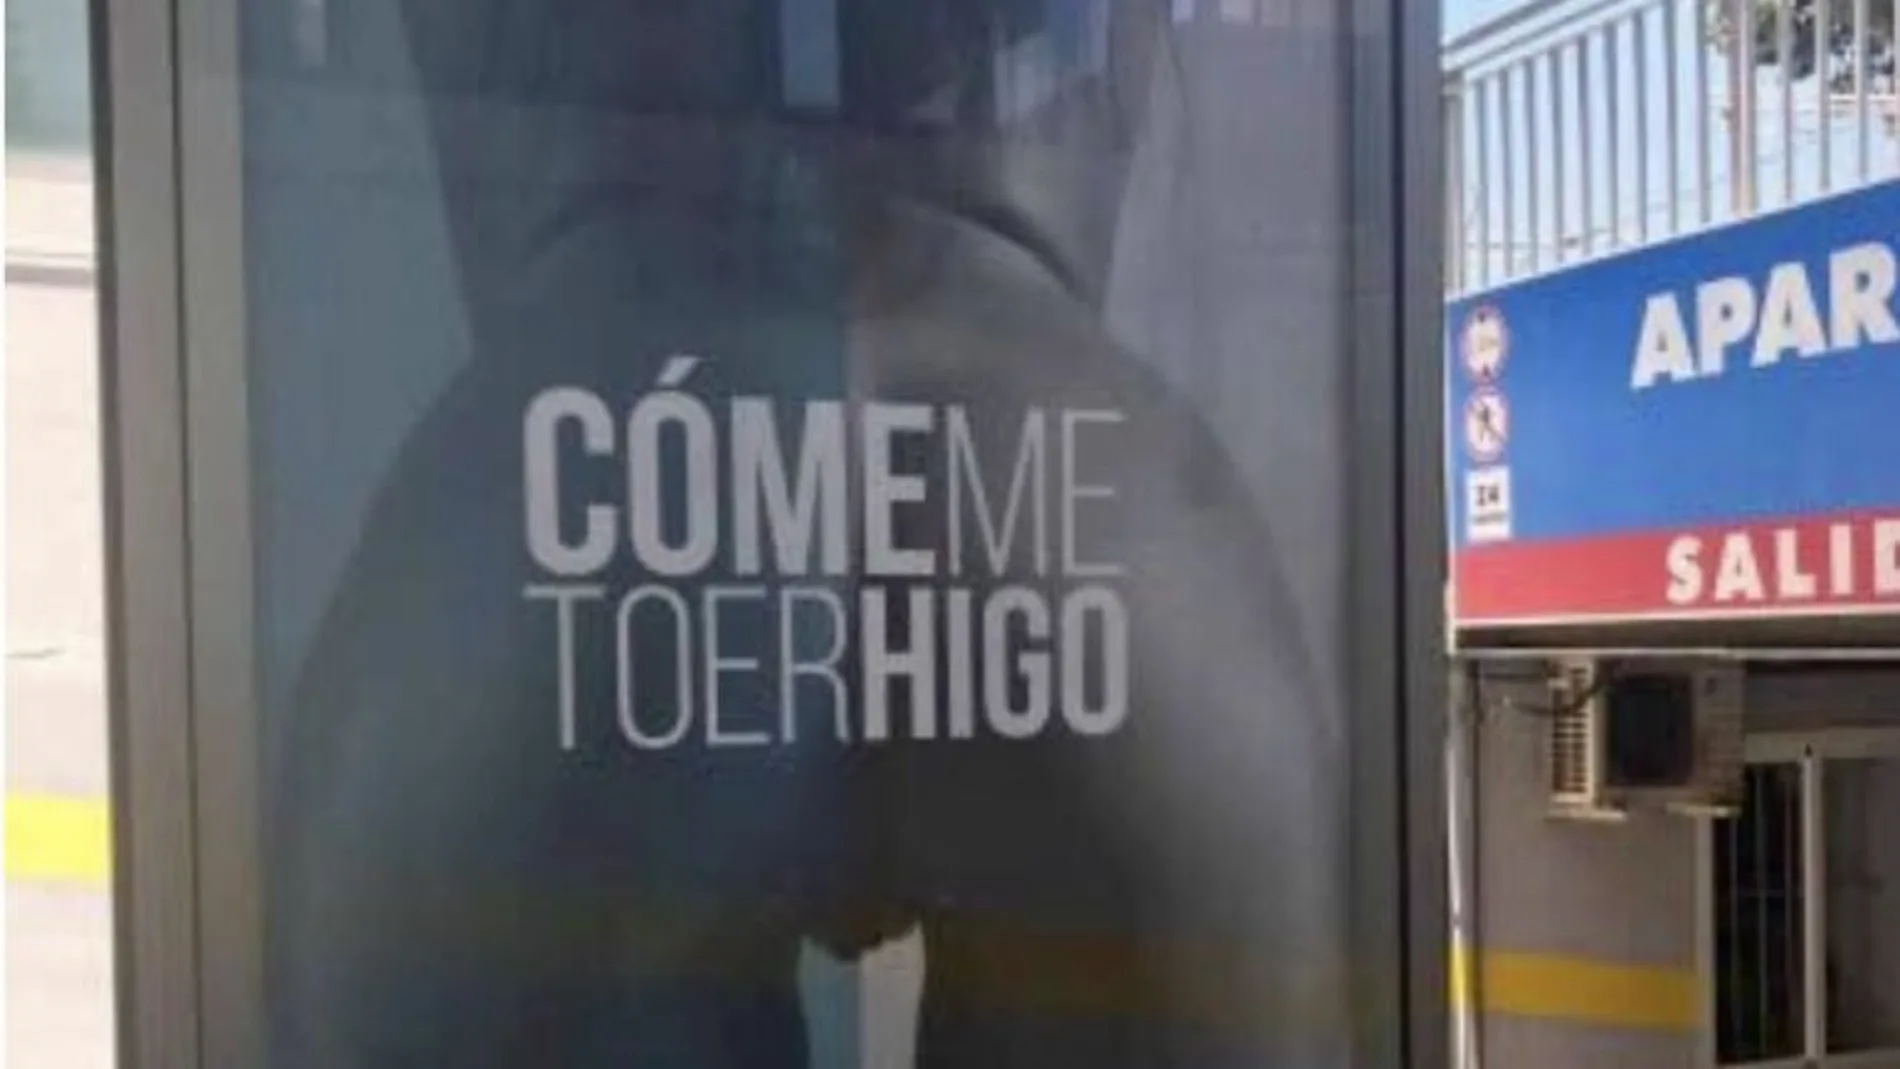 "Cómeme toerhigo", la sexista y misteriosa campaña publicitaria que indigna a Málaga